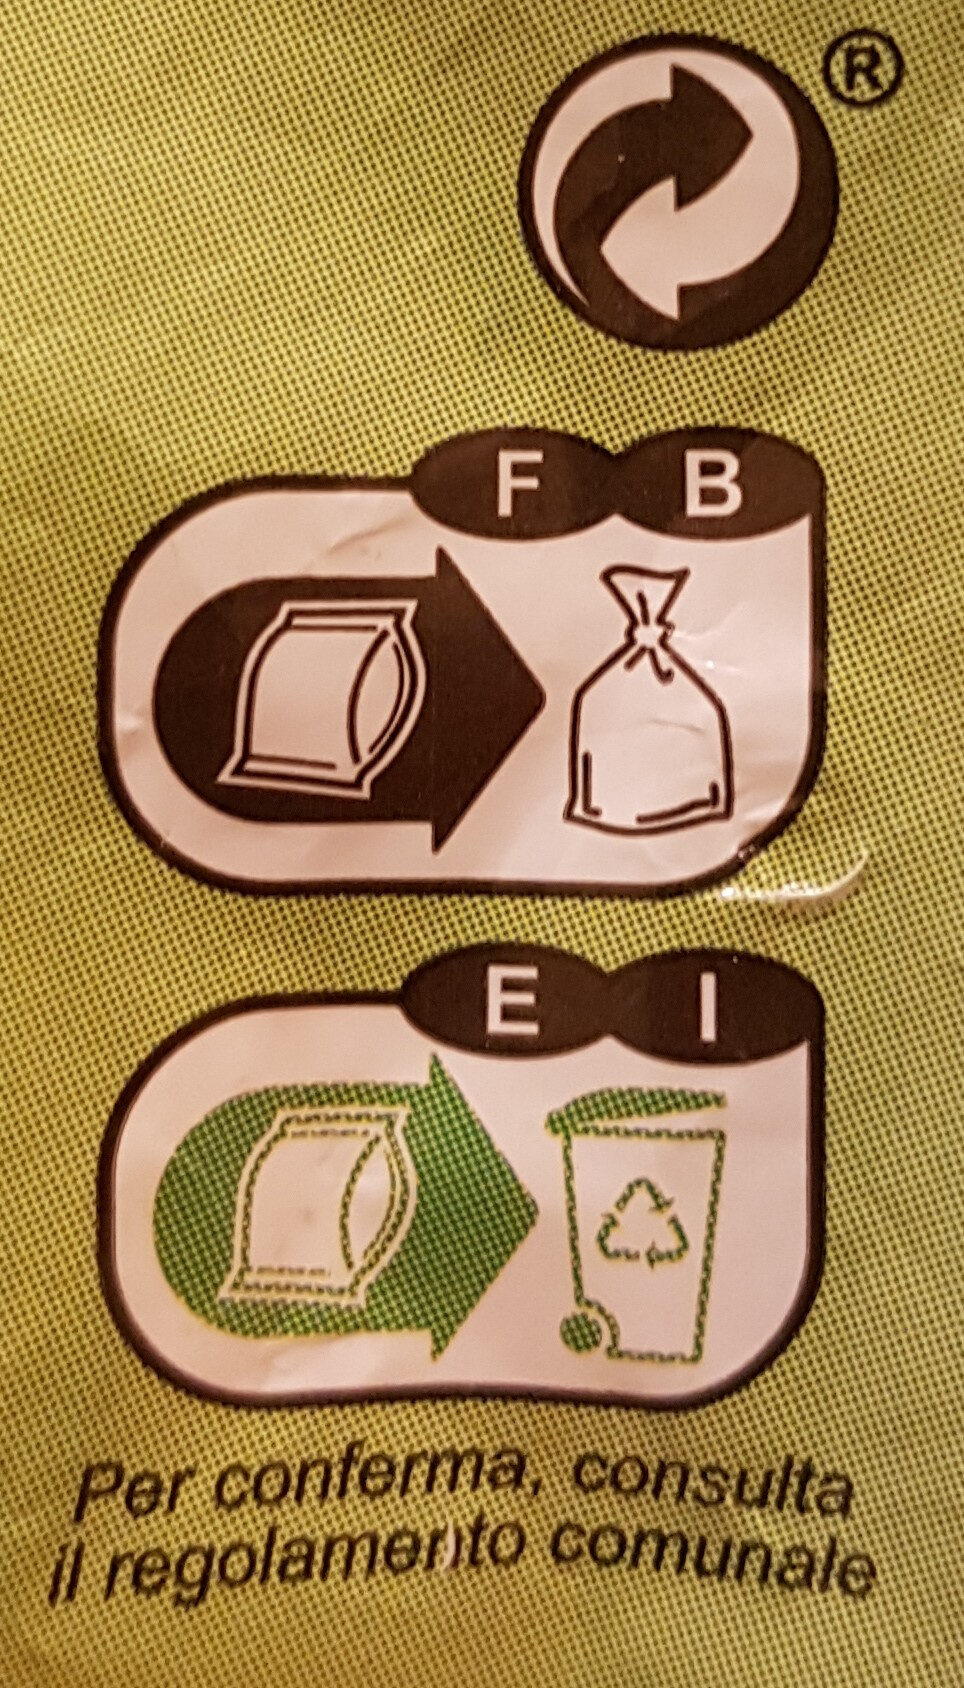 Courgettes en rondelles - Istruzioni per il riciclaggio e/o informazioni sull'imballaggio - fr